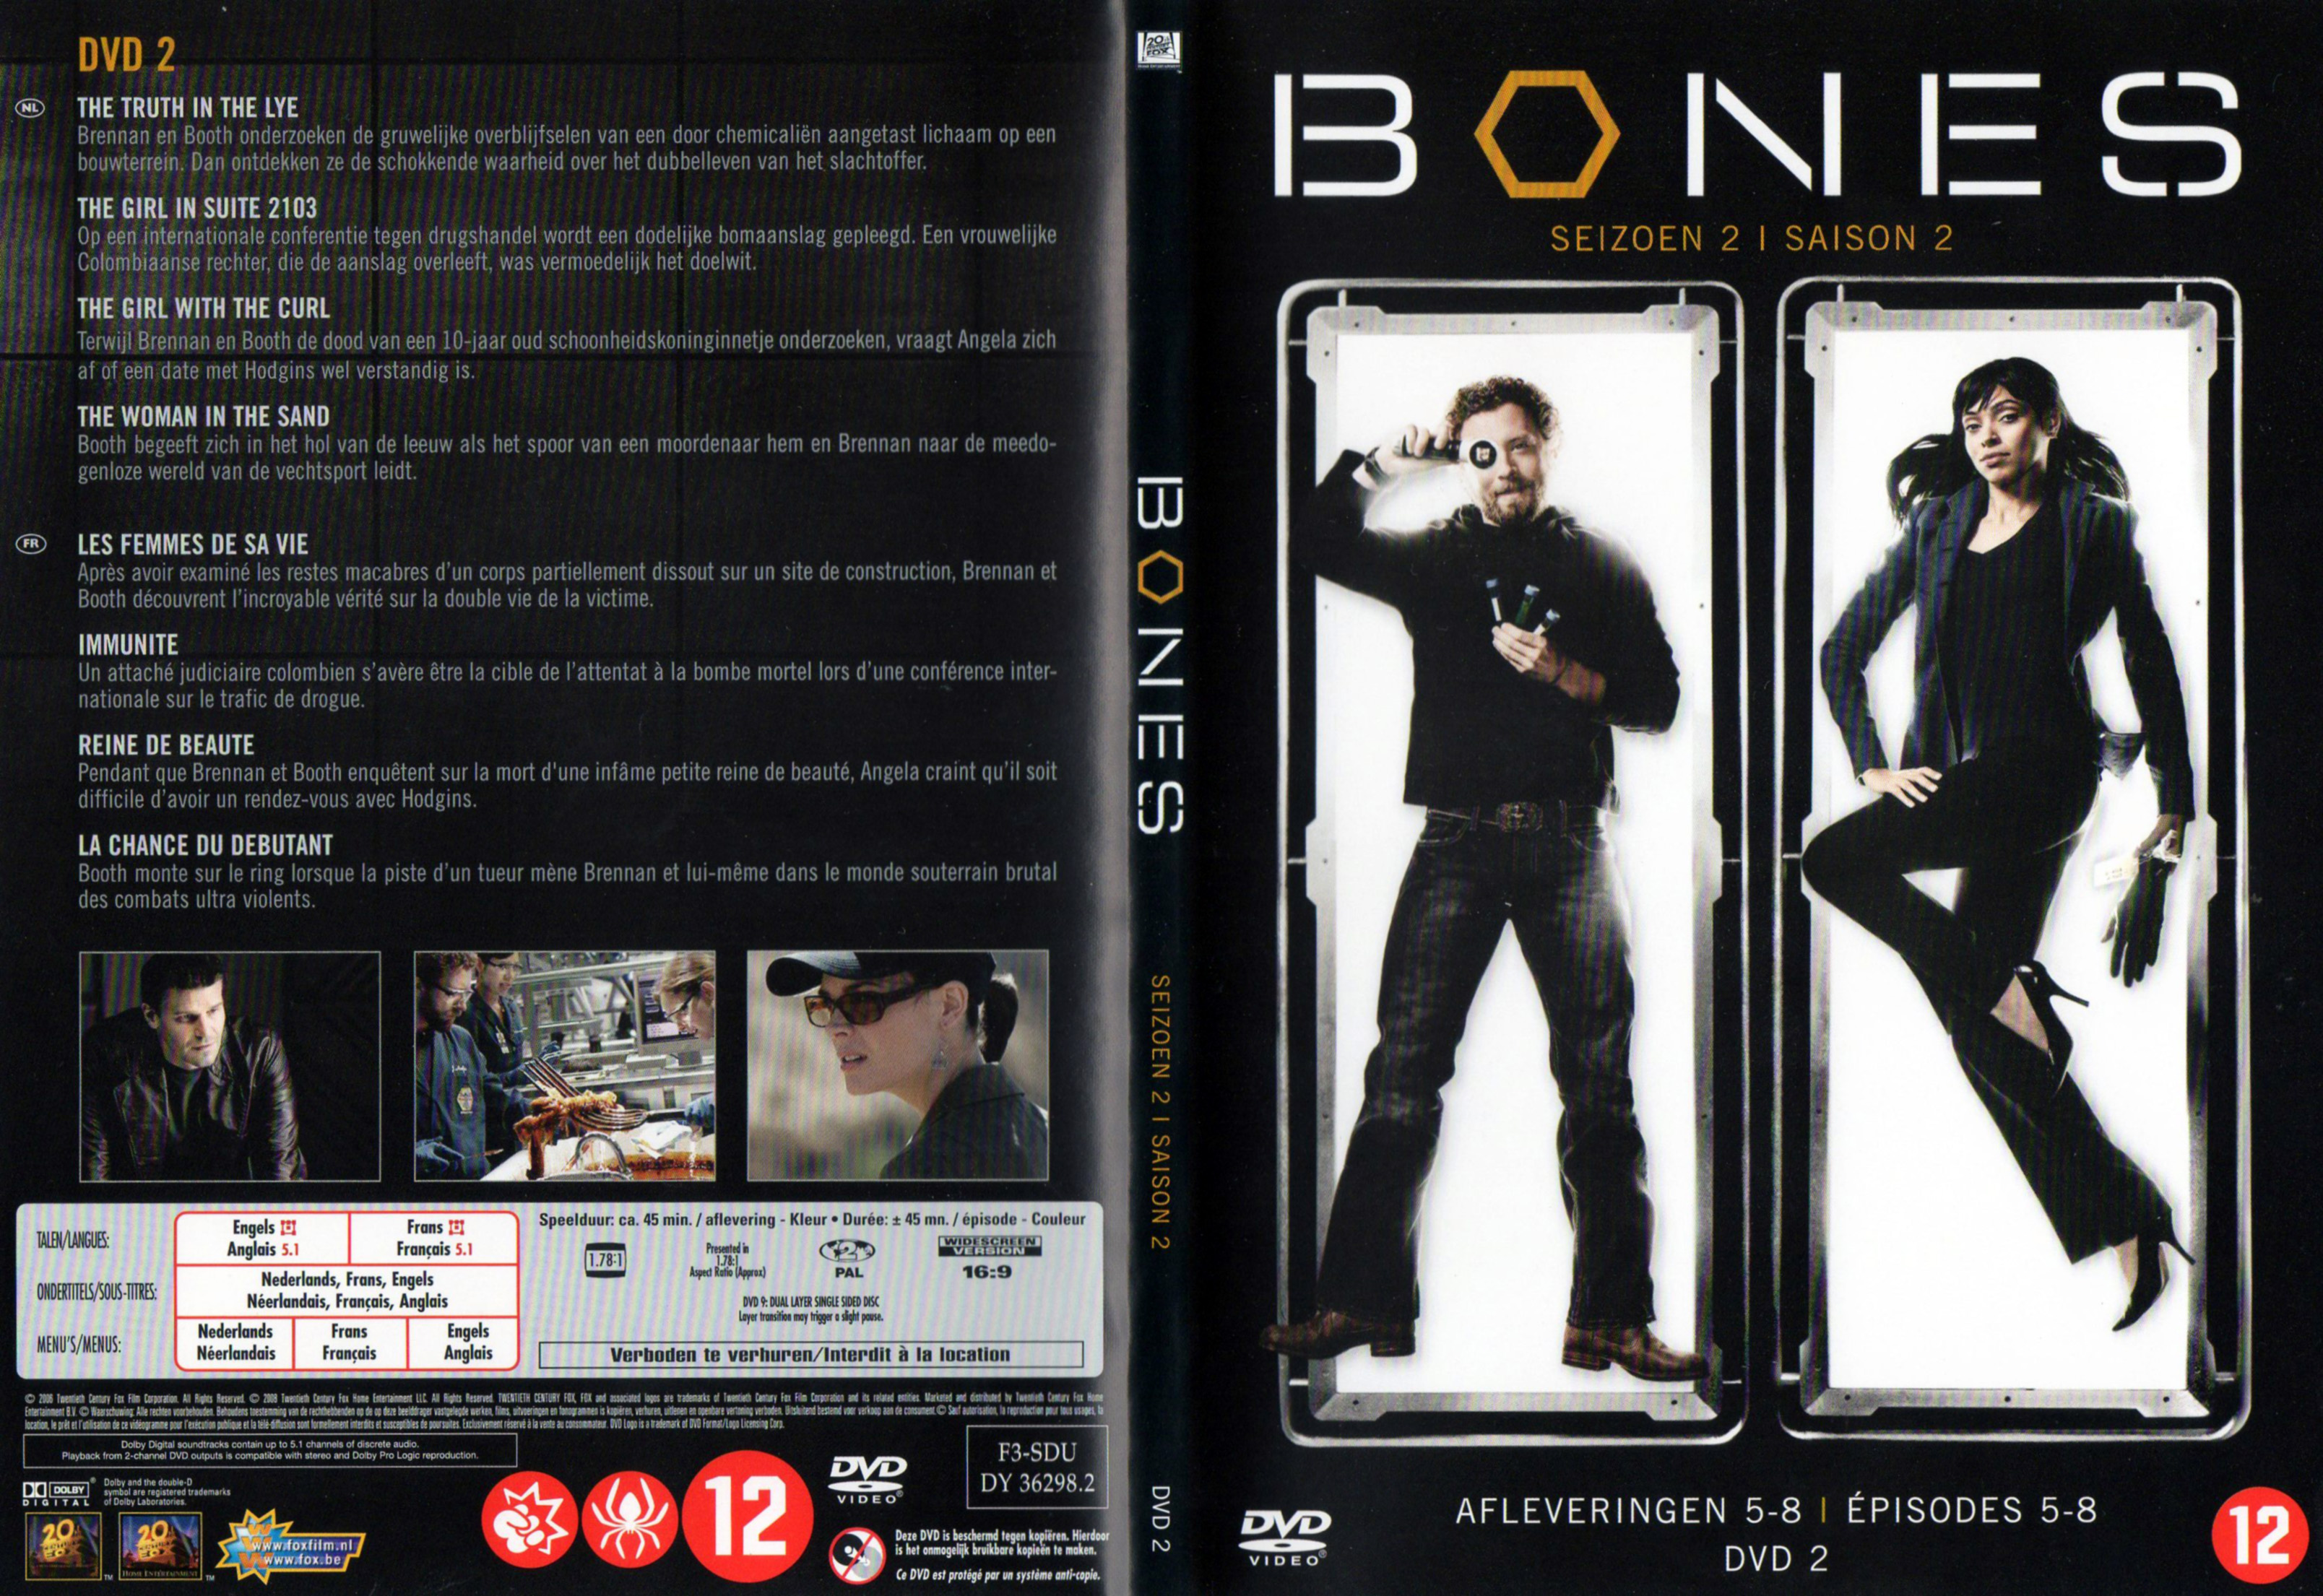 Jaquette DVD Bones Saison 2 DVD 2 v2